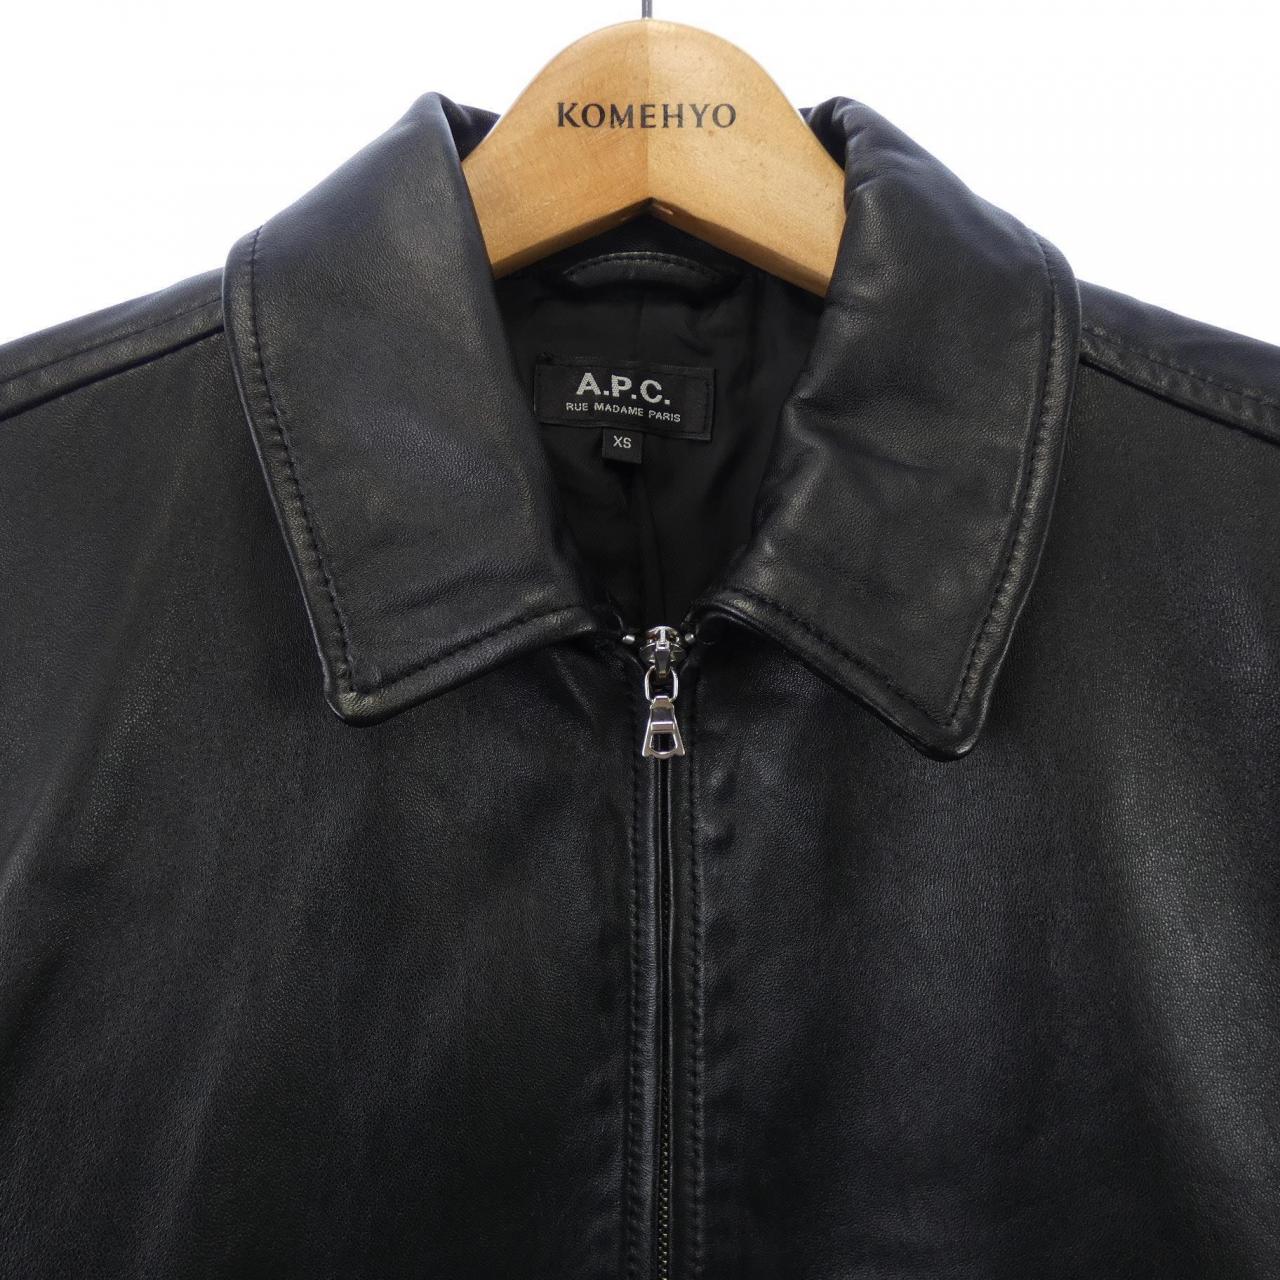 16,170円a.p.c leather jacket